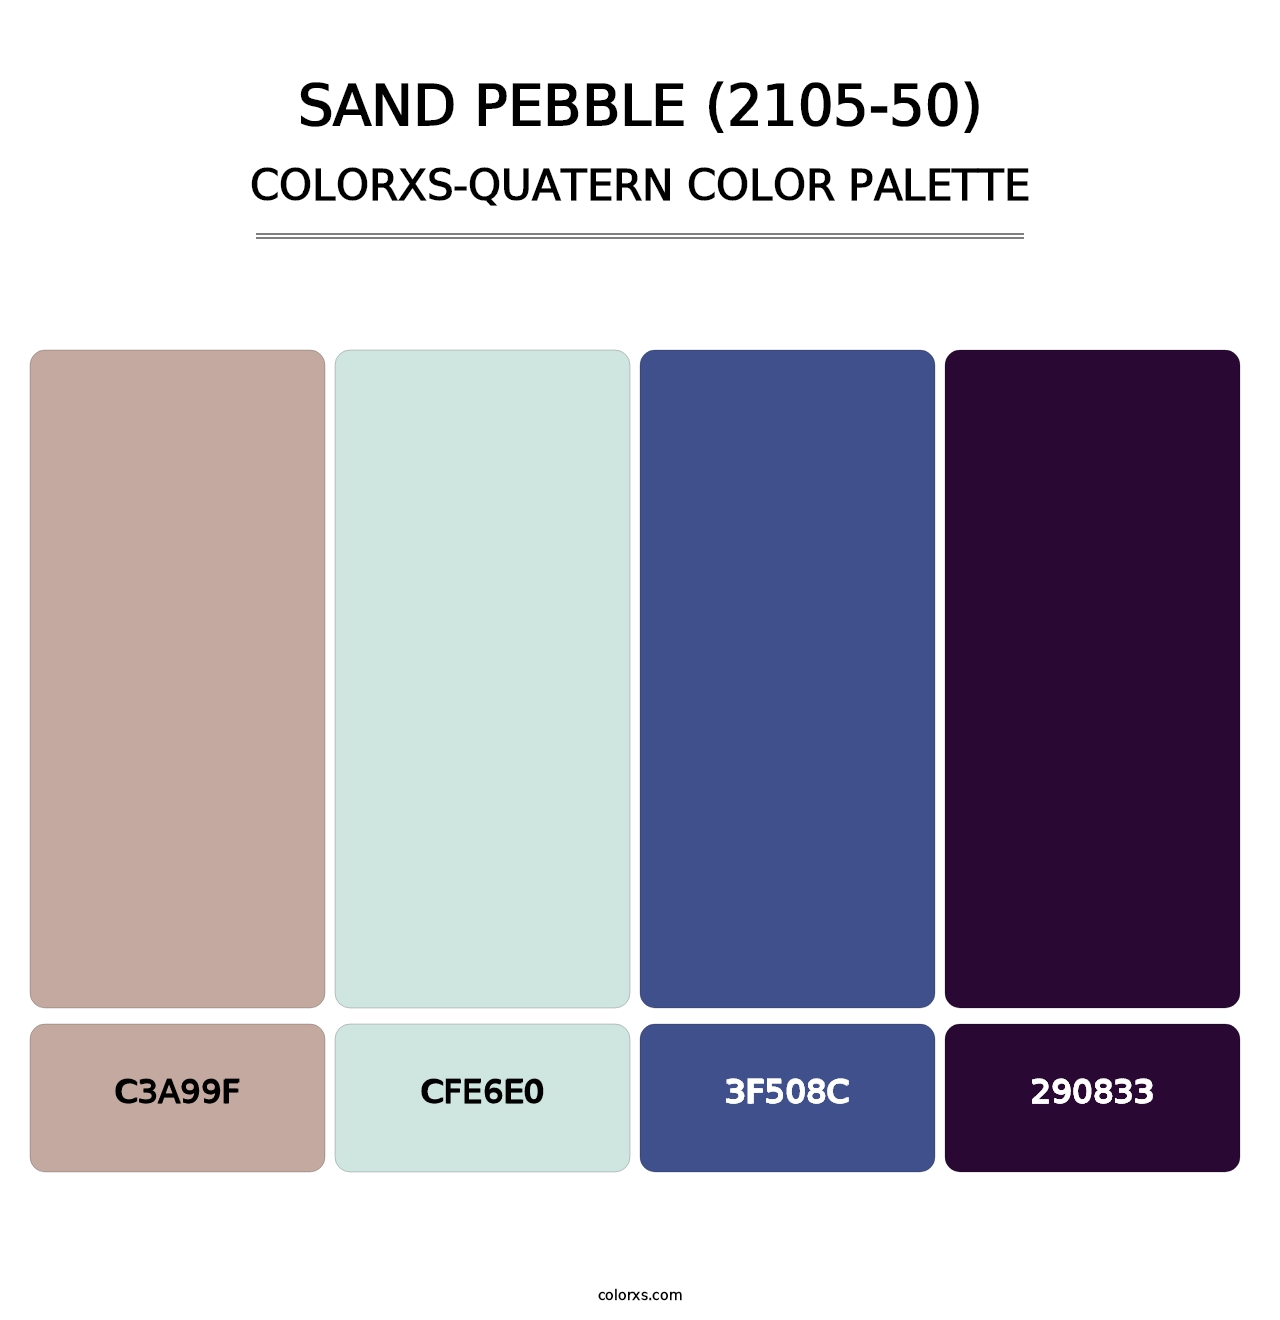 Sand Pebble (2105-50) - Colorxs Quatern Palette